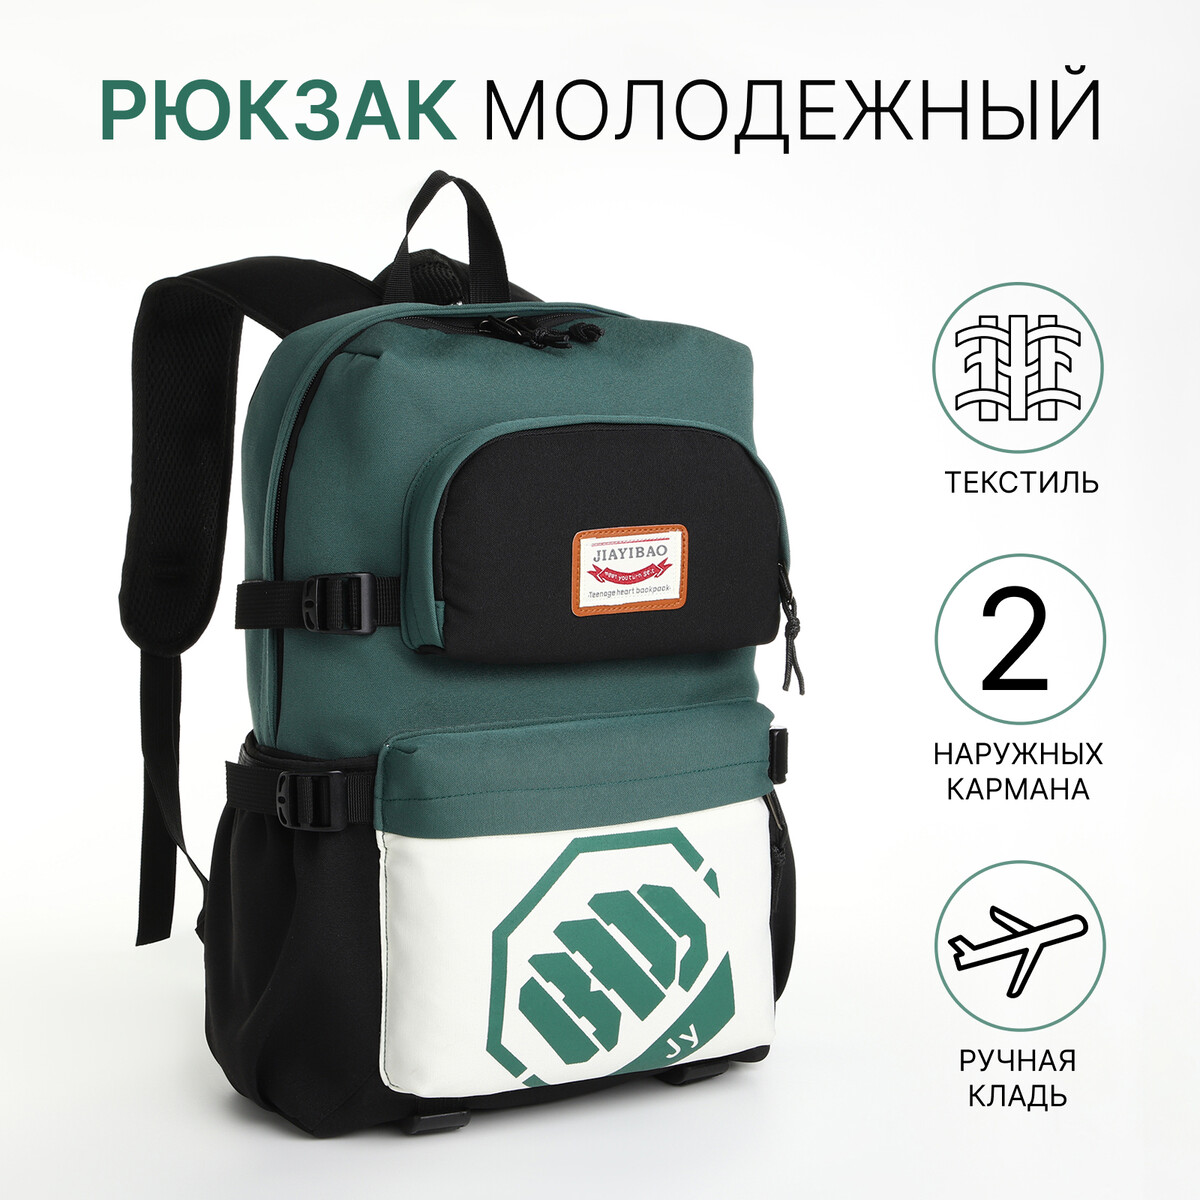 Рюкзак молодежный из текстиля, 2 кармана, цвет черный/зеленый